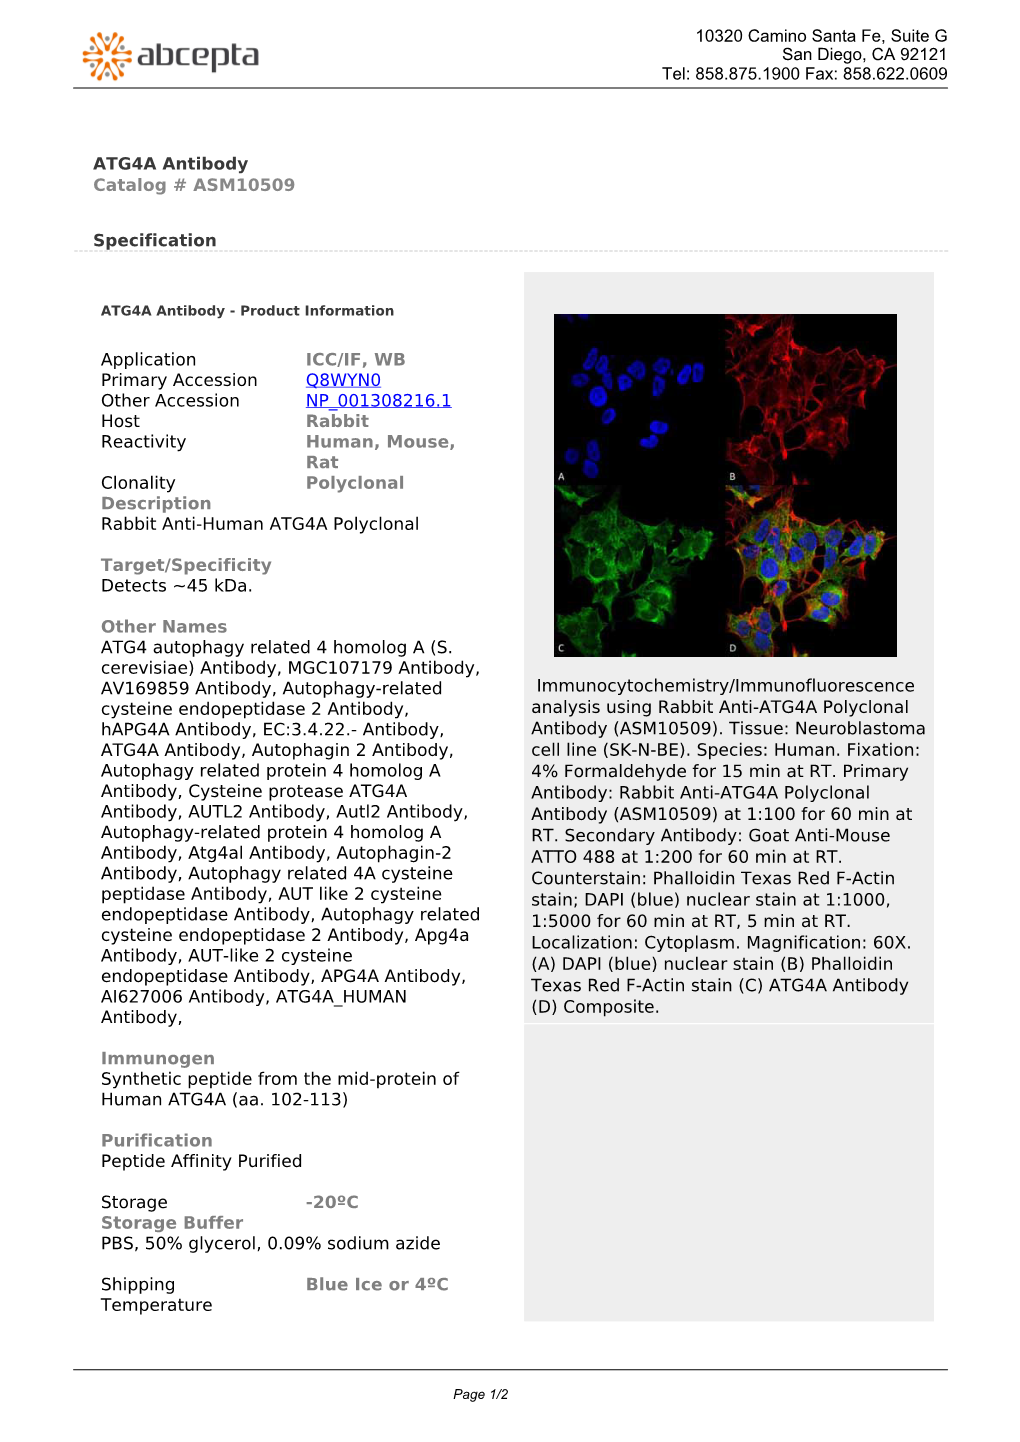 ATG4A Antibody Catalog # ASM10509